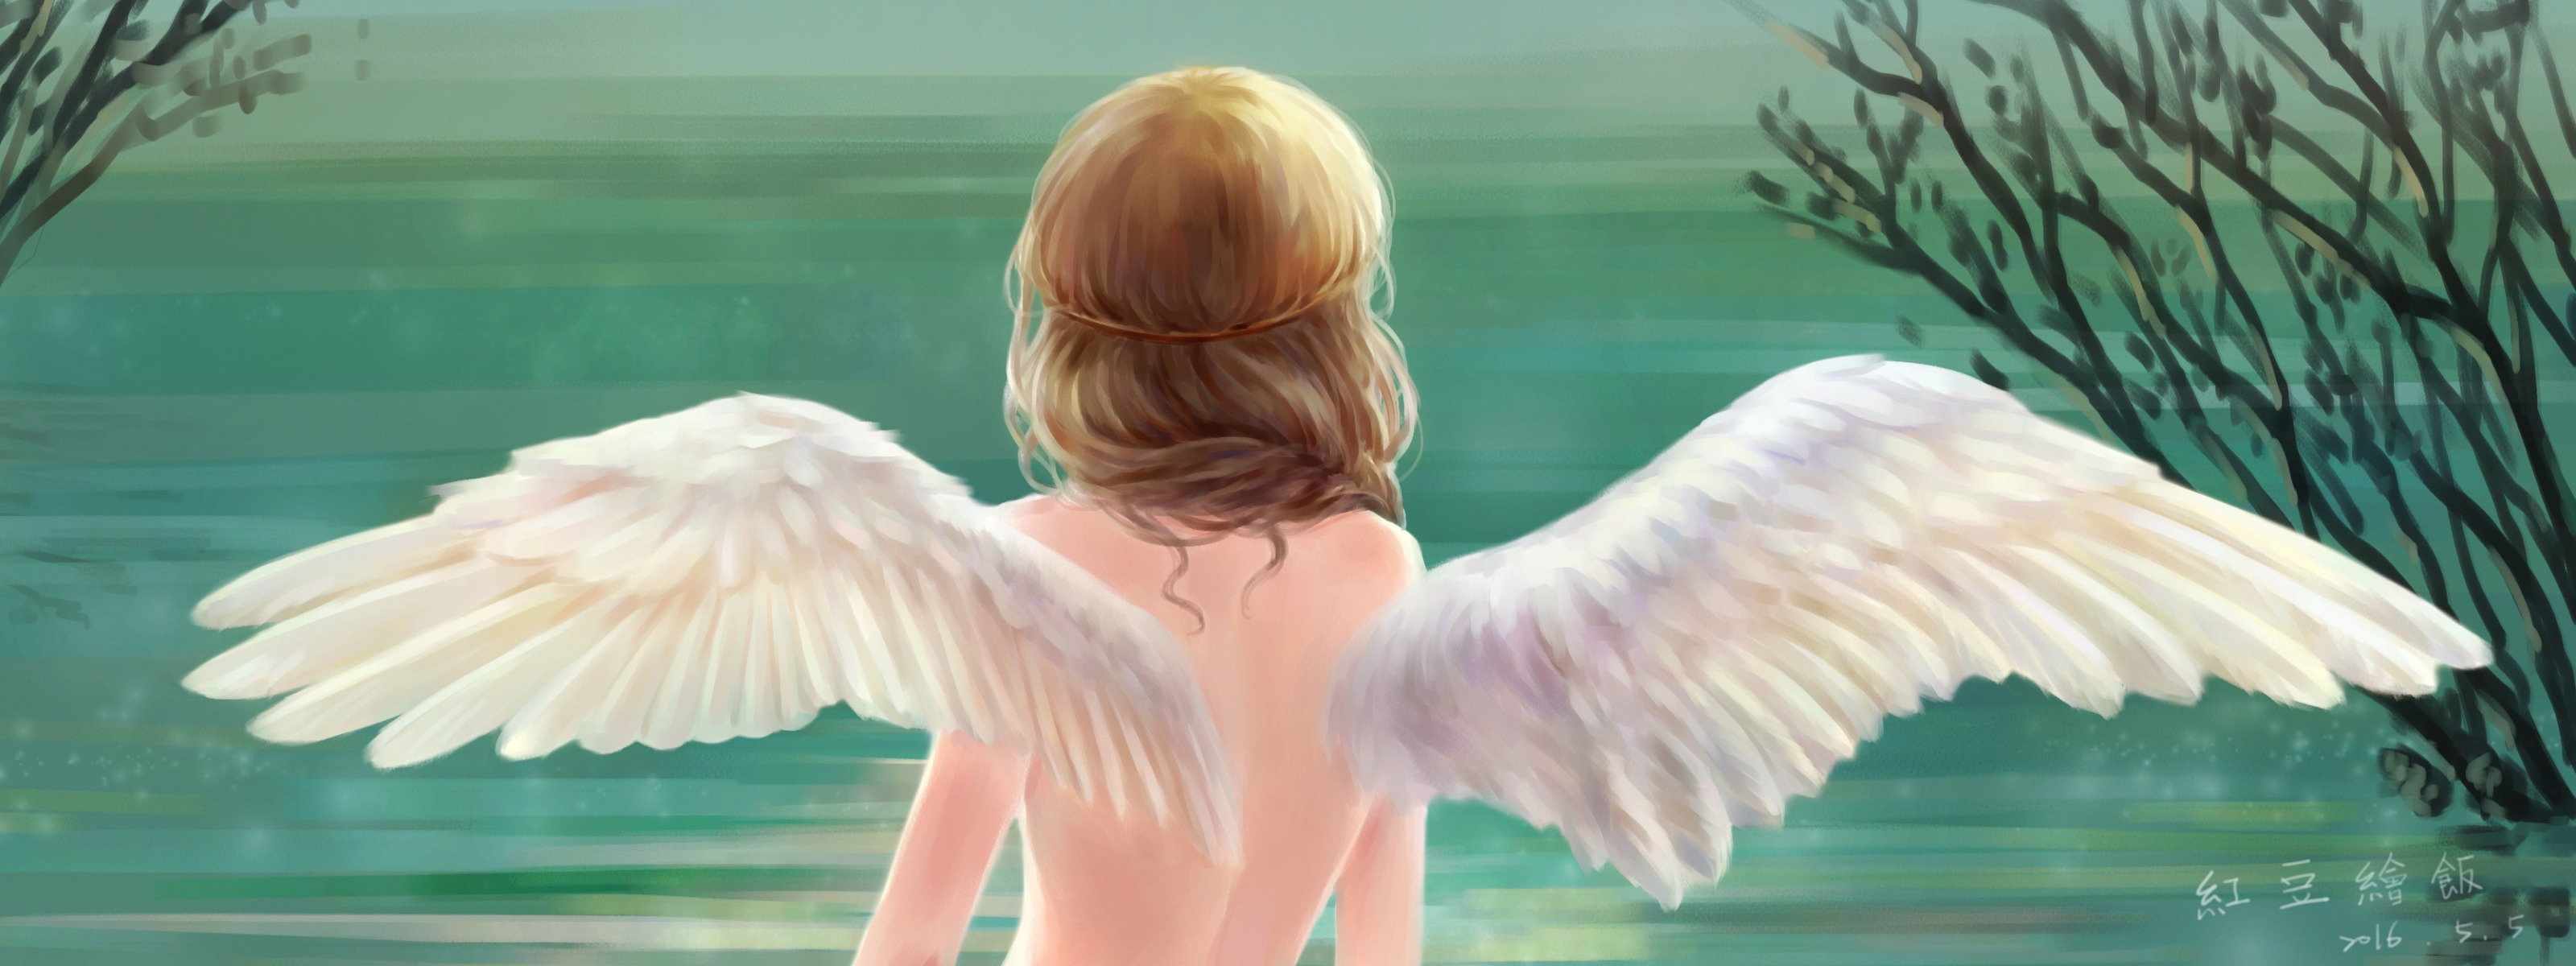 Видишь крылья за спиной. Крылья ангела на спине. Крылья на спине у девушки. Женщина с крыльями. Девушка с крыльями птицы.